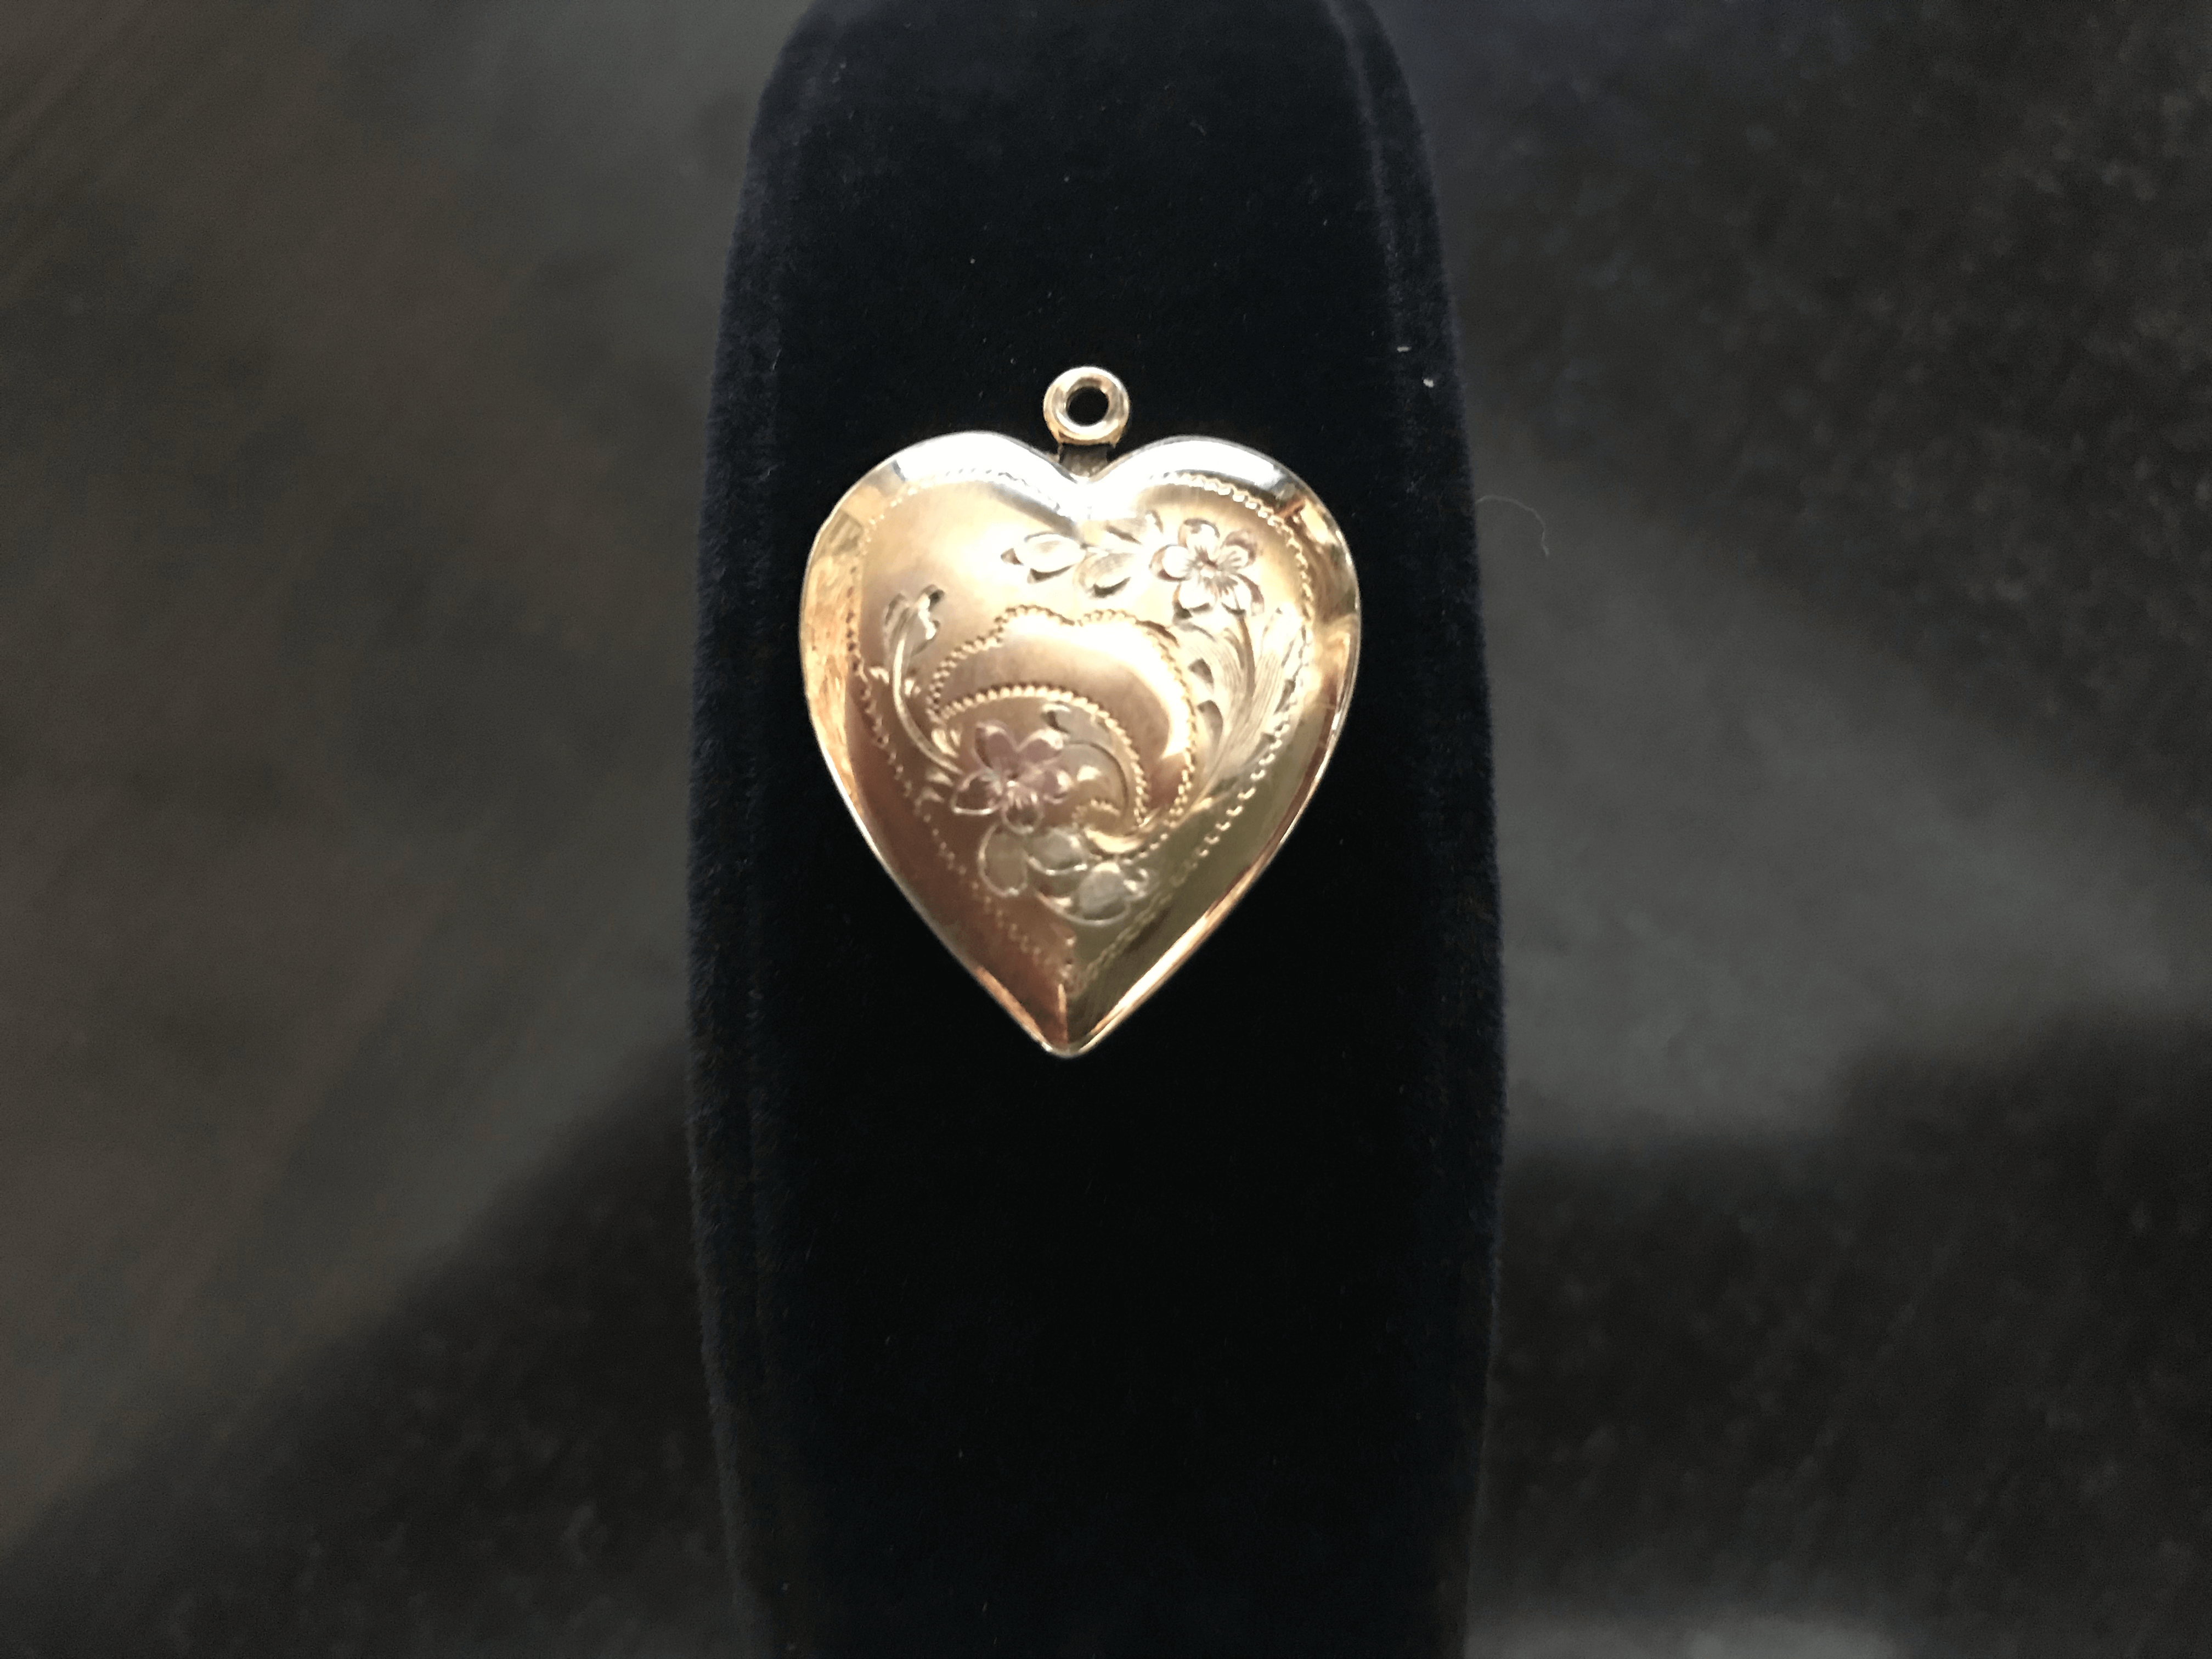 1950s 12k Gold Locket Brooch Pin & Heart Pendant - Shop Thrifty Treasures